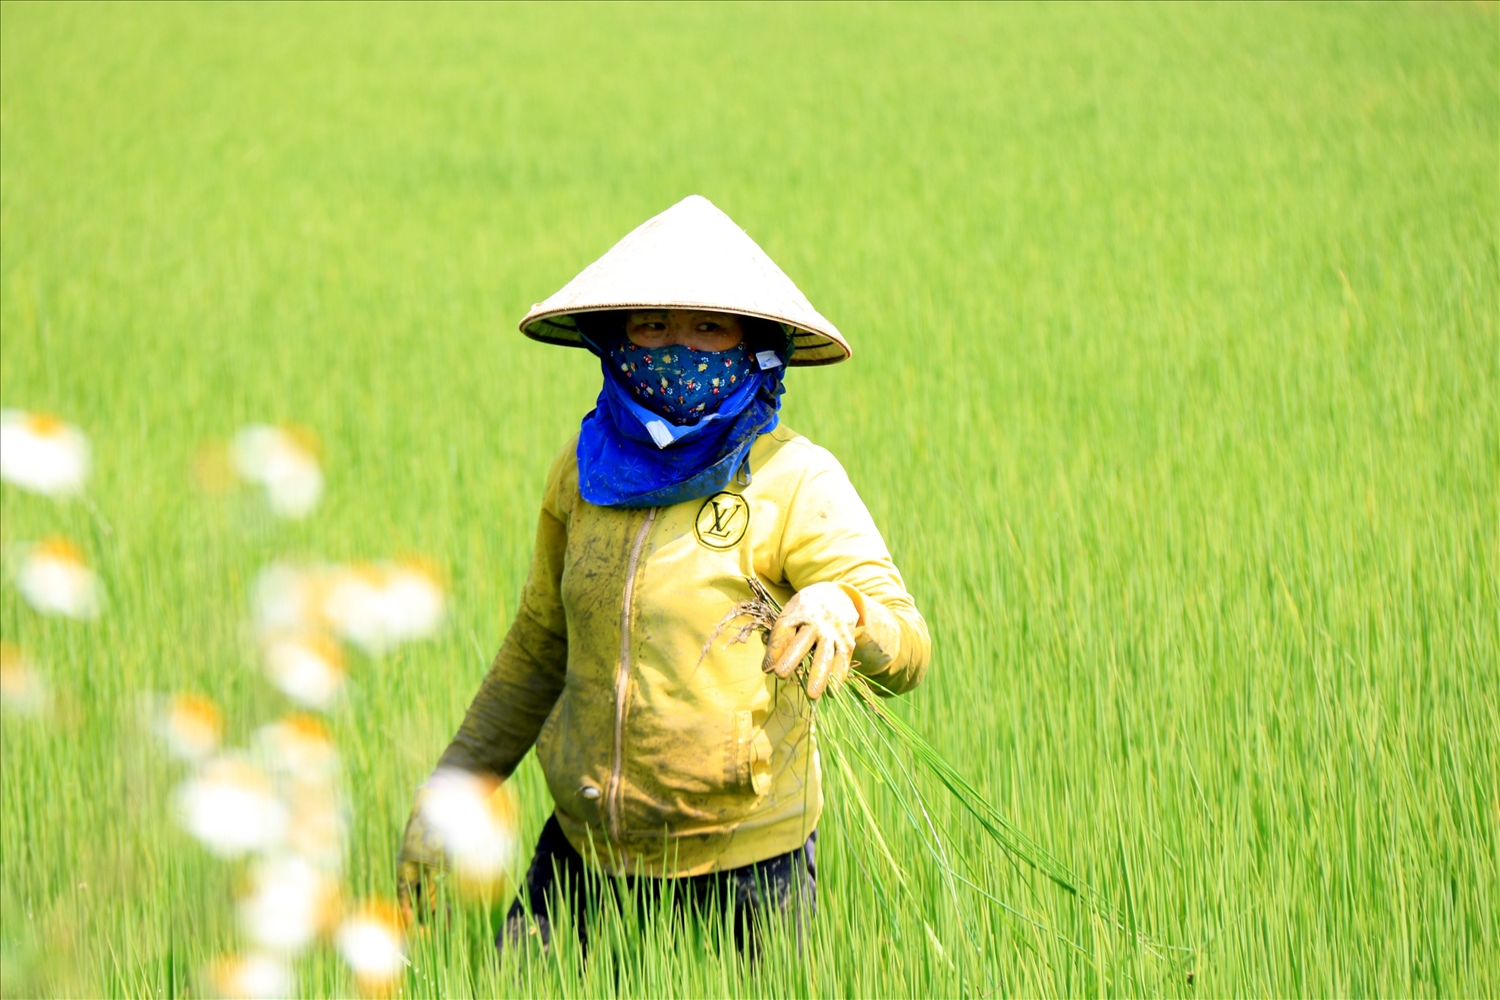 Nông dân Buôn Chóah áp dụng khoa học kỹ thuật vào sản xuất lúa để tăng năng suất, chất lượng lúa gạo và bảo vệ môi trường